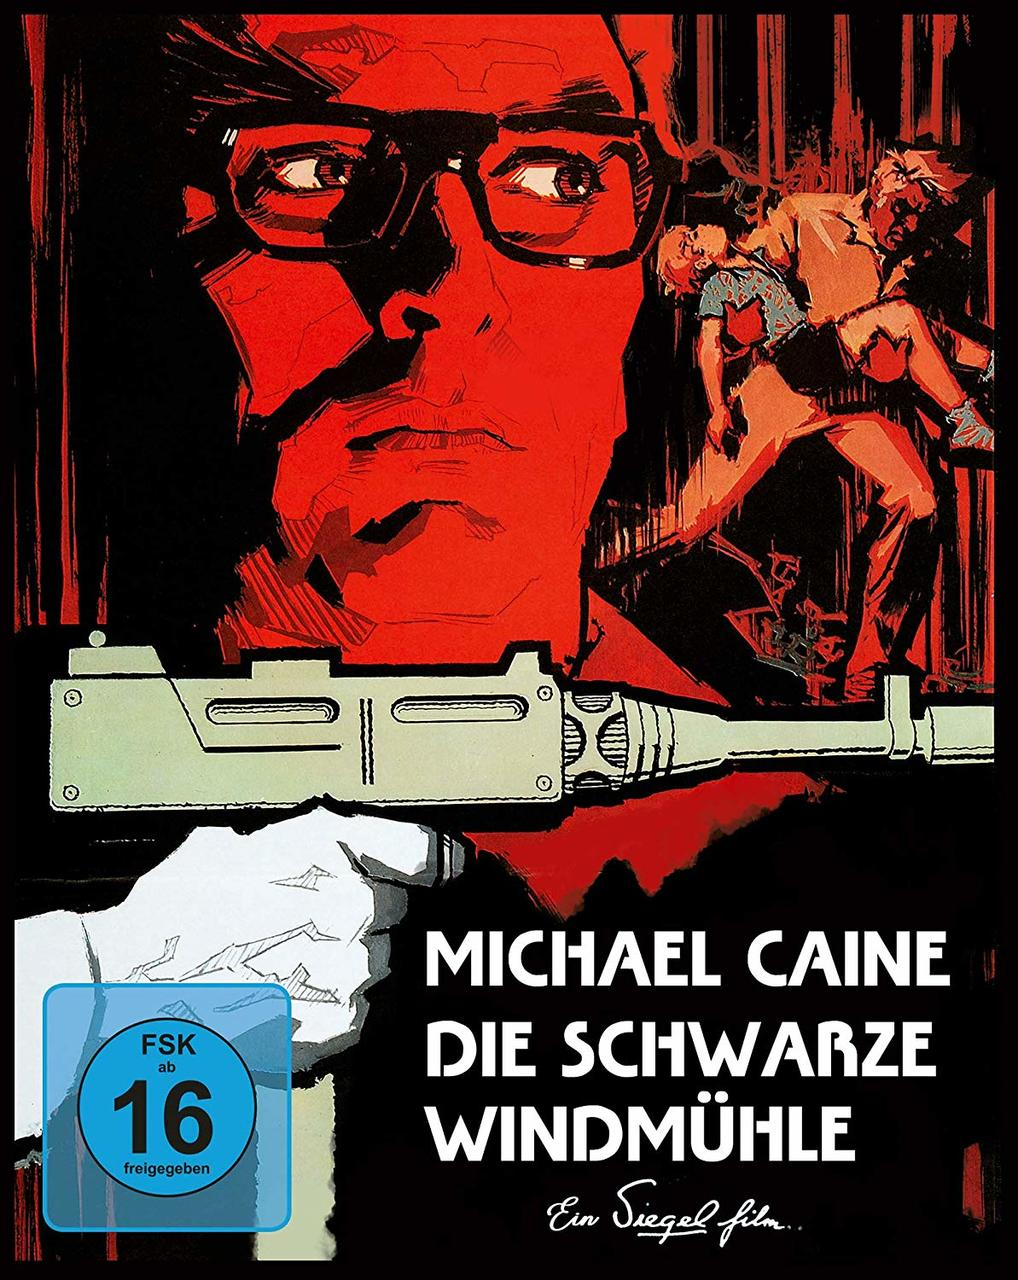 schwarze Windmühle + Die Blu-ray DVD